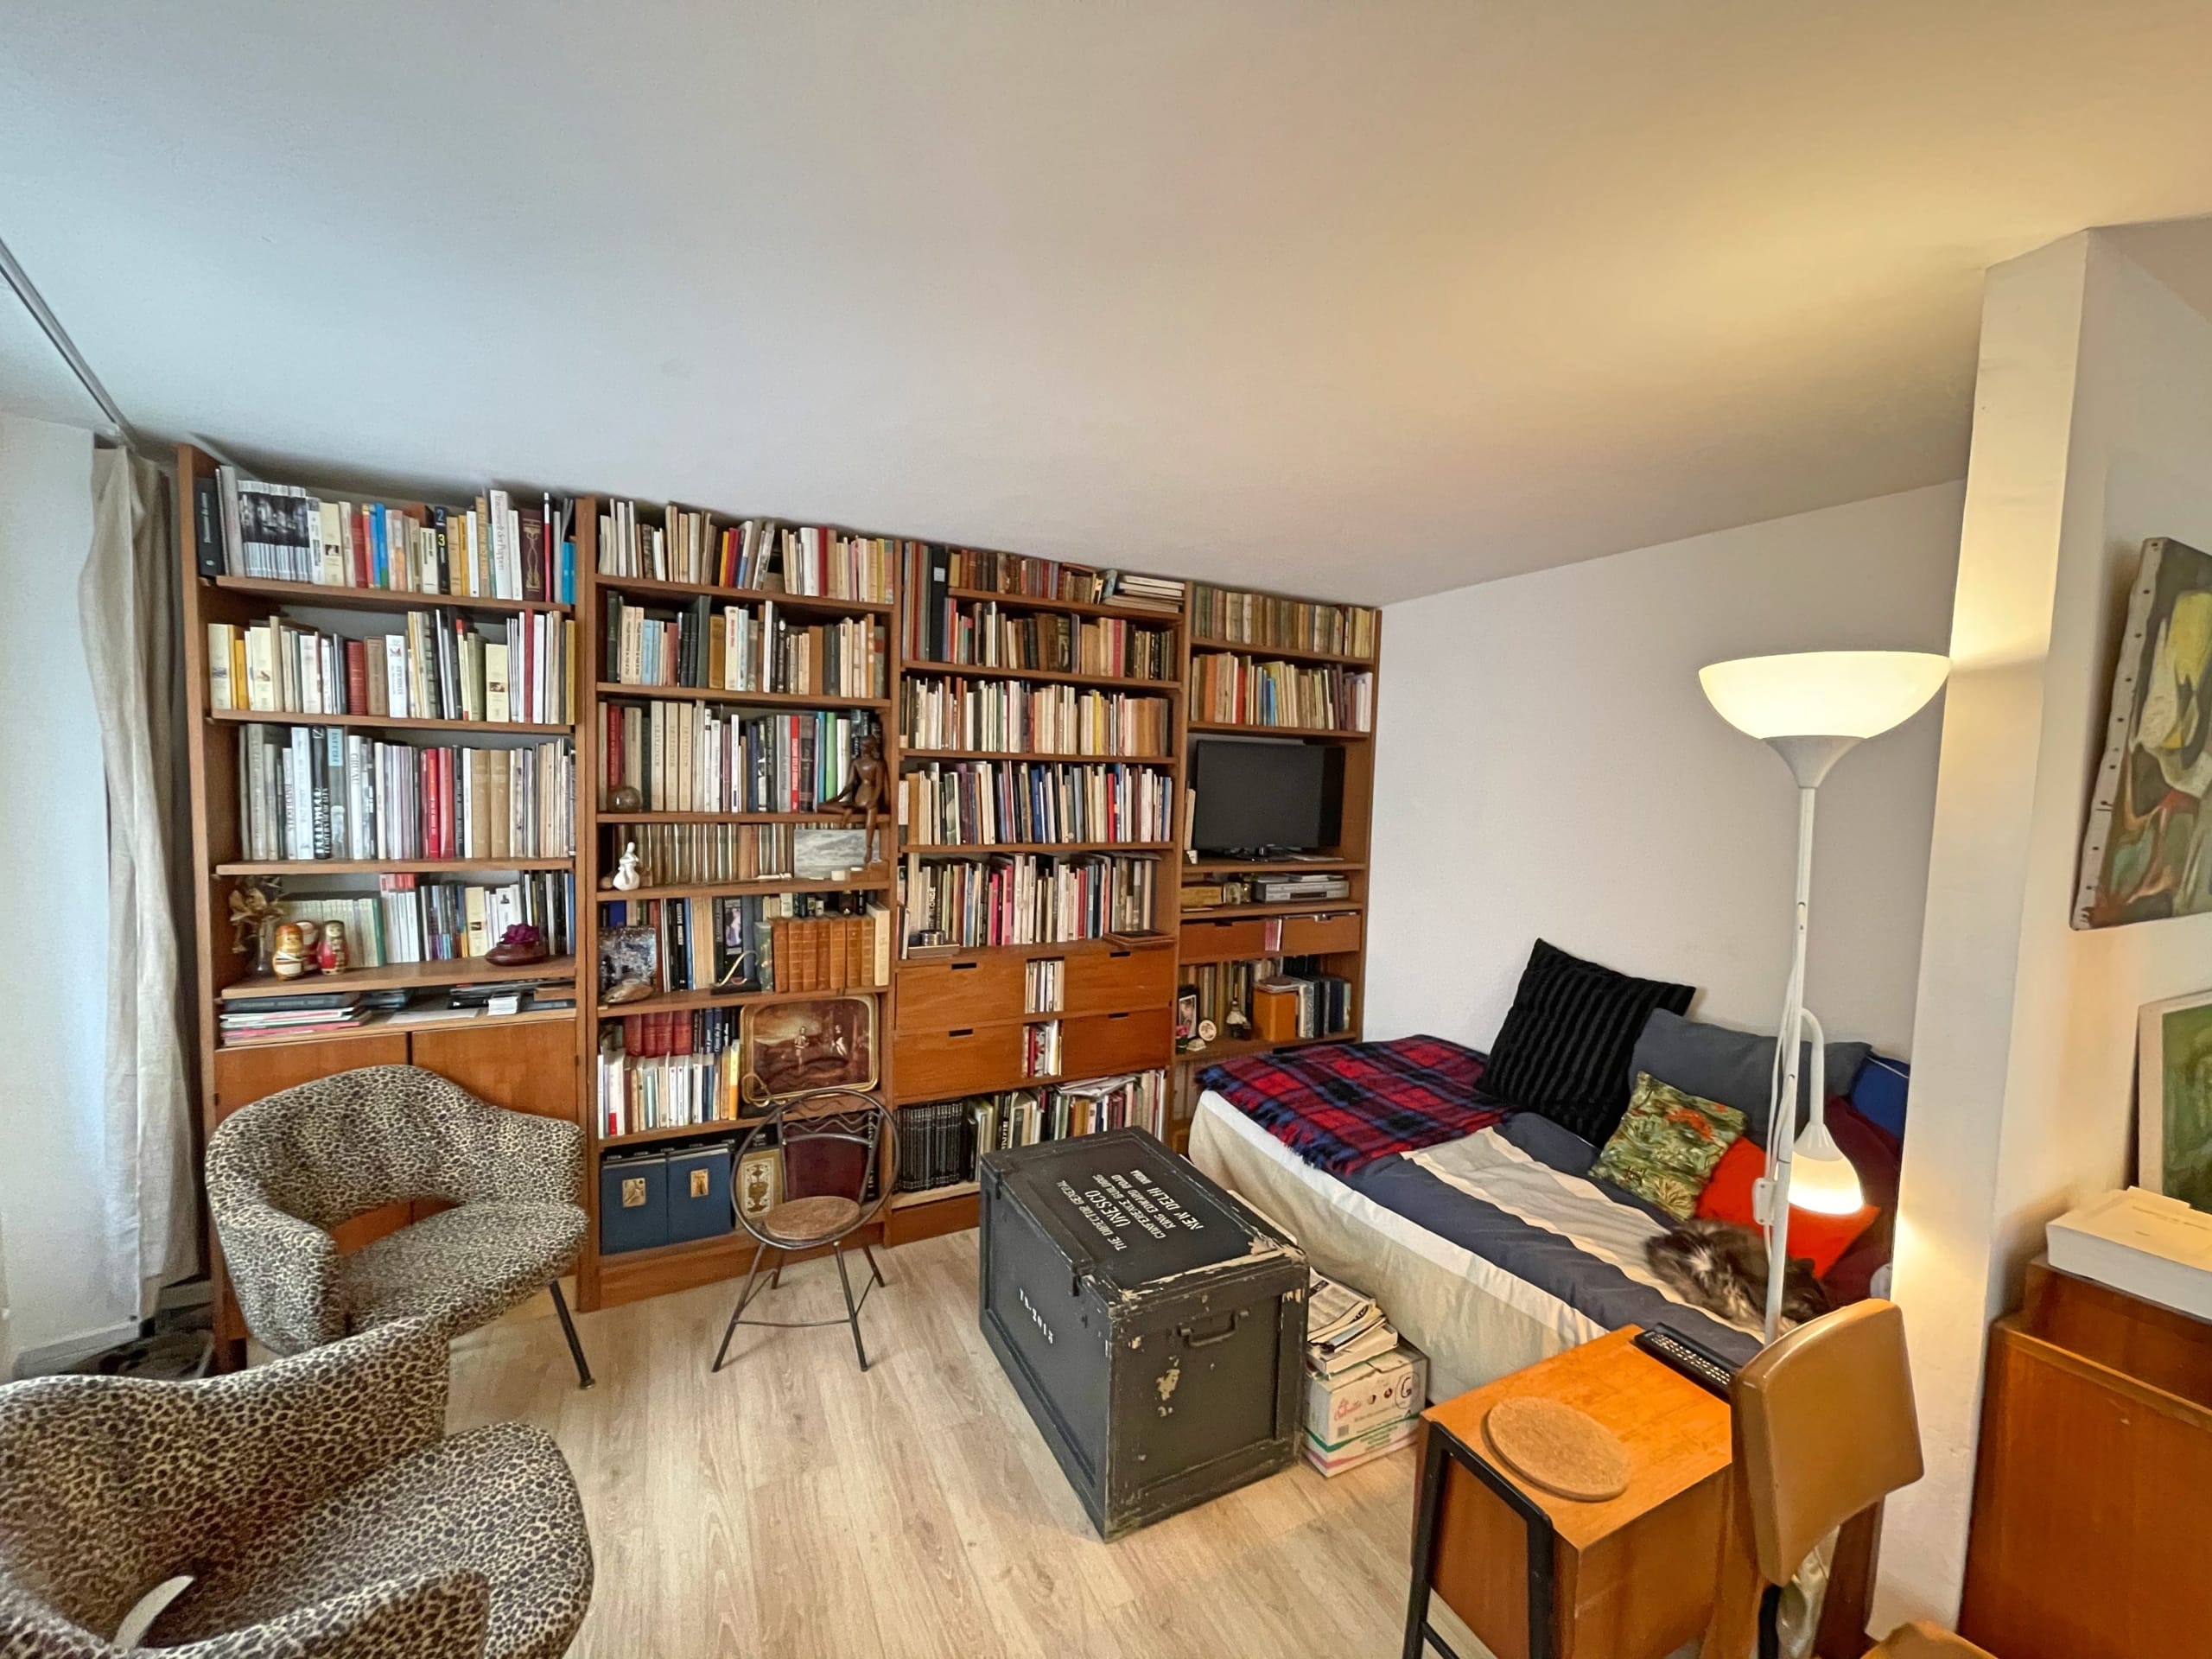 Appartement 80m² avec jardin – Viager Occupé Paris 4ème